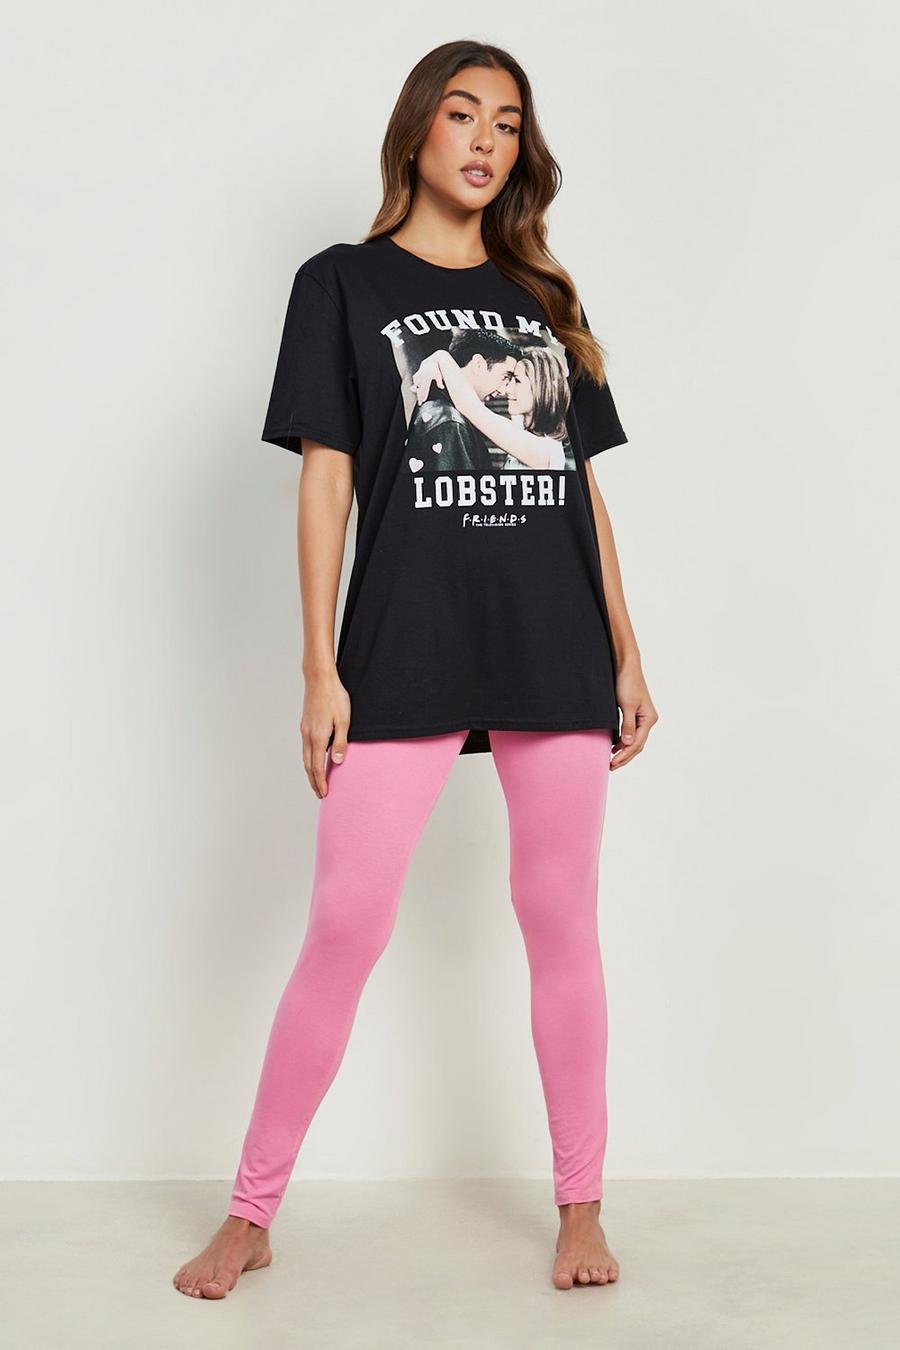 Conjunto de leggings y camiseta con estampado de Friends My Lobster, Black nero